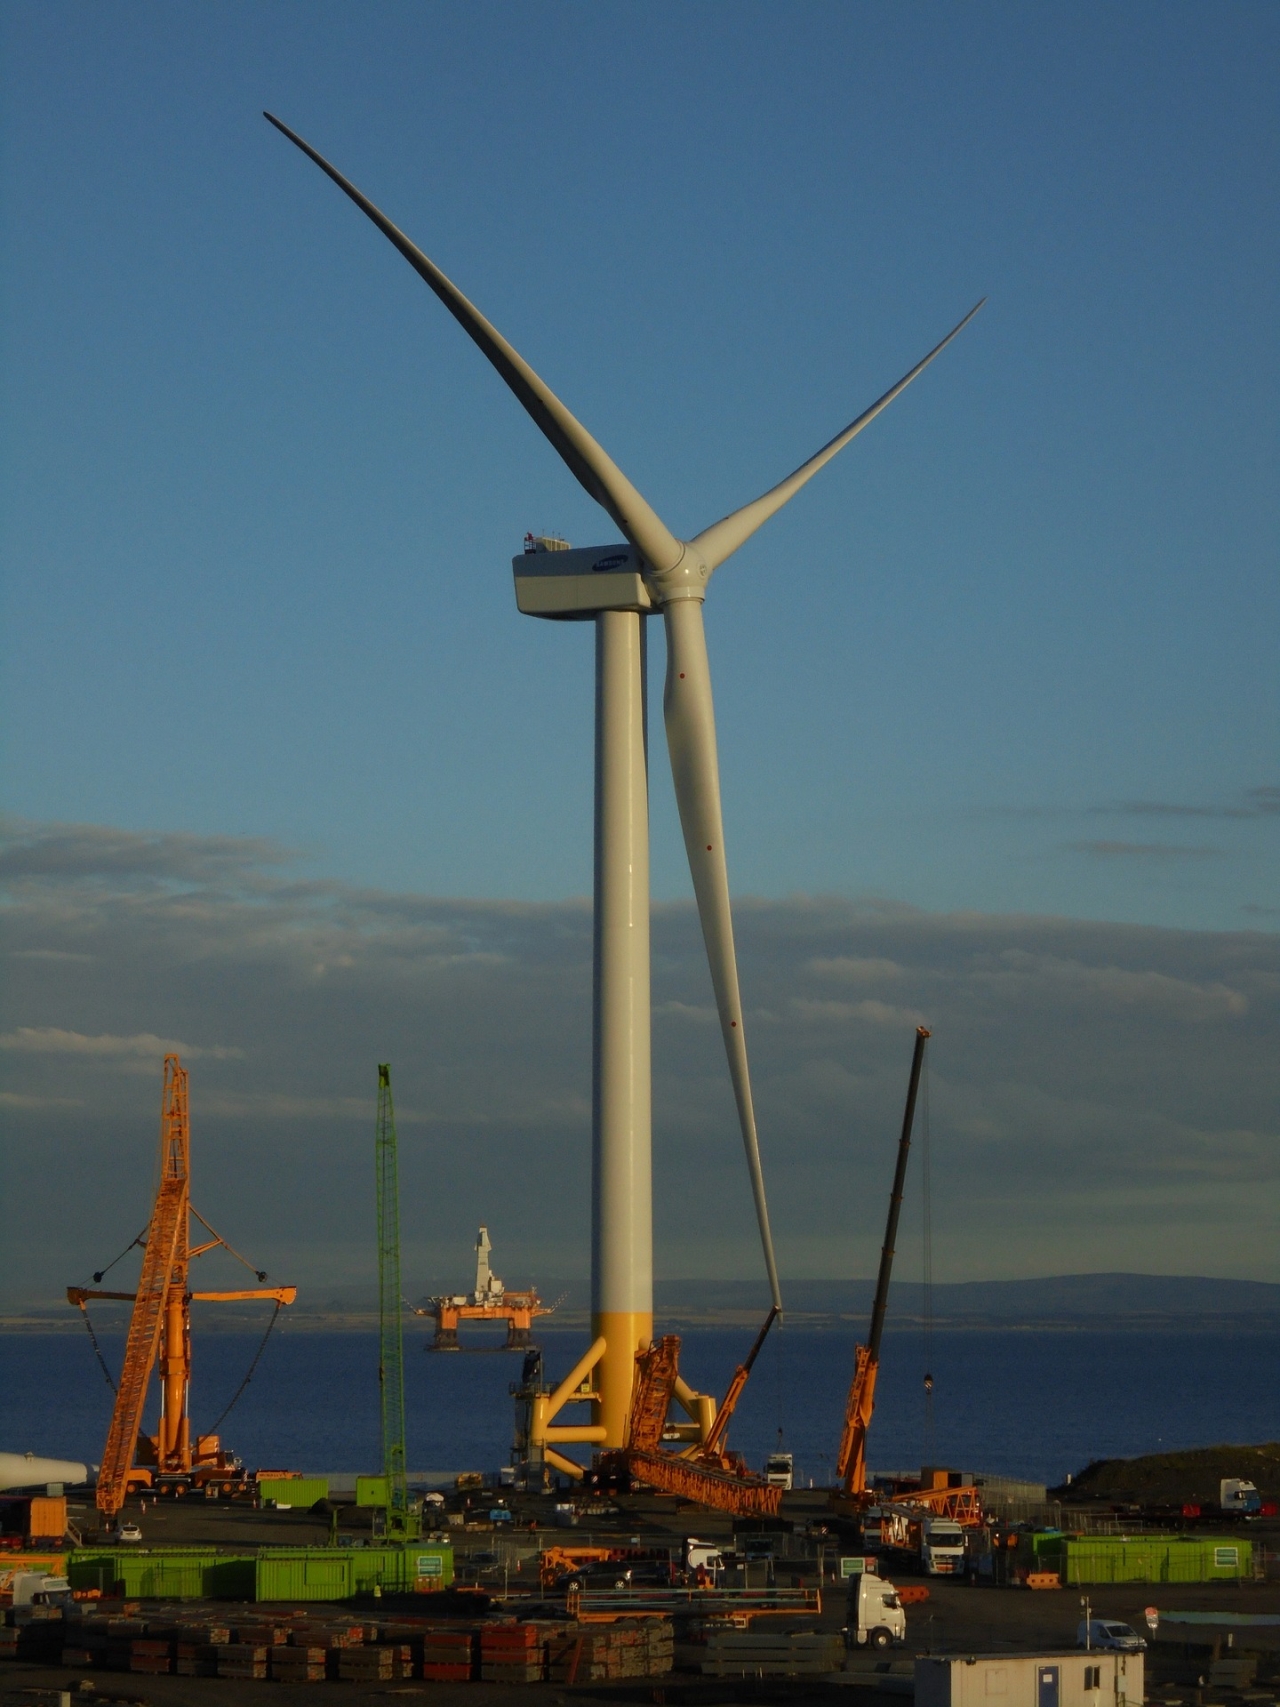 Gigantic Wind Turbine in a port setting